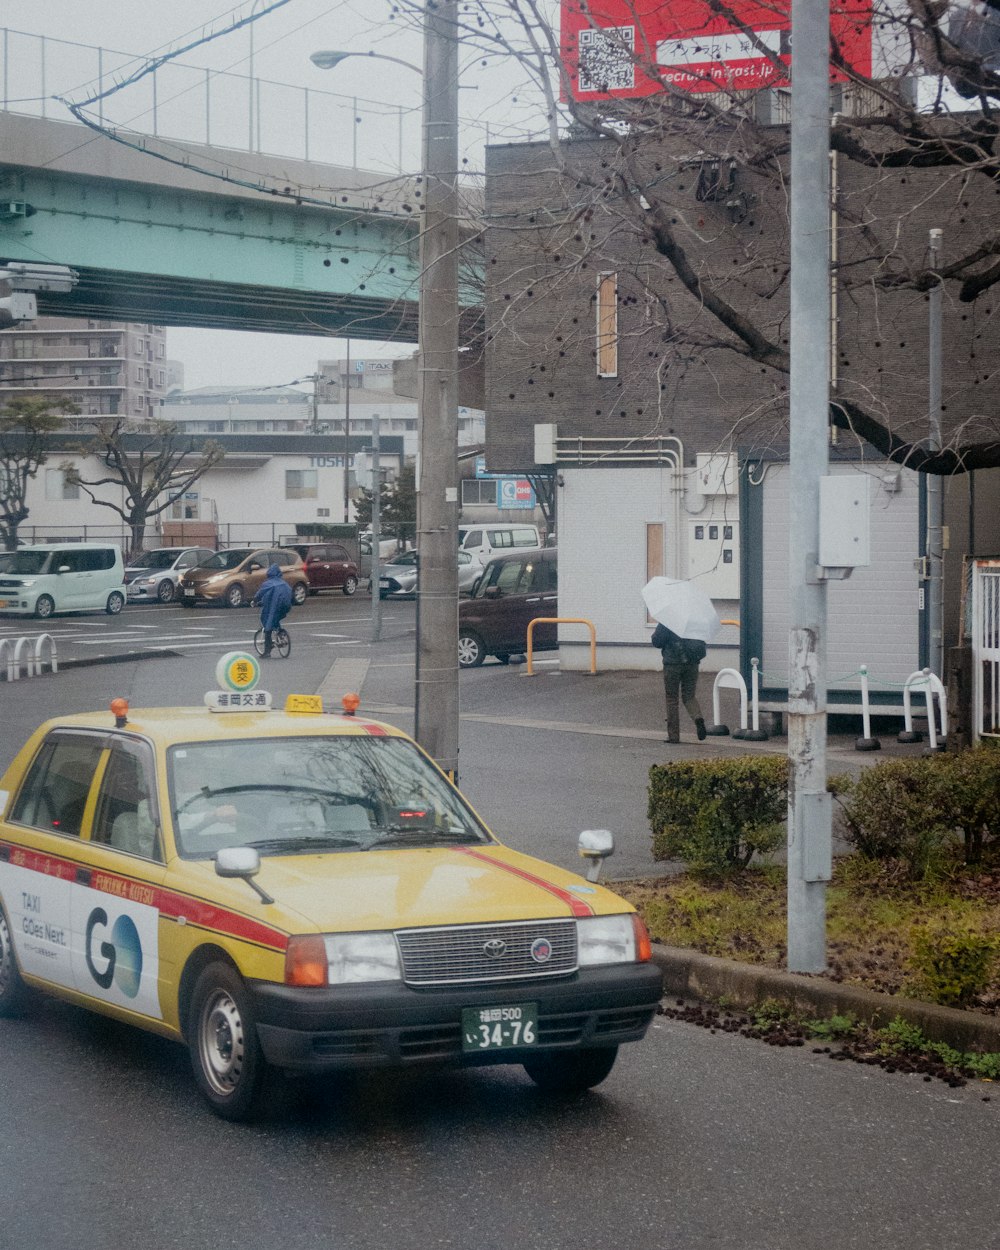 a taxi cab driving down a street next to a bridge